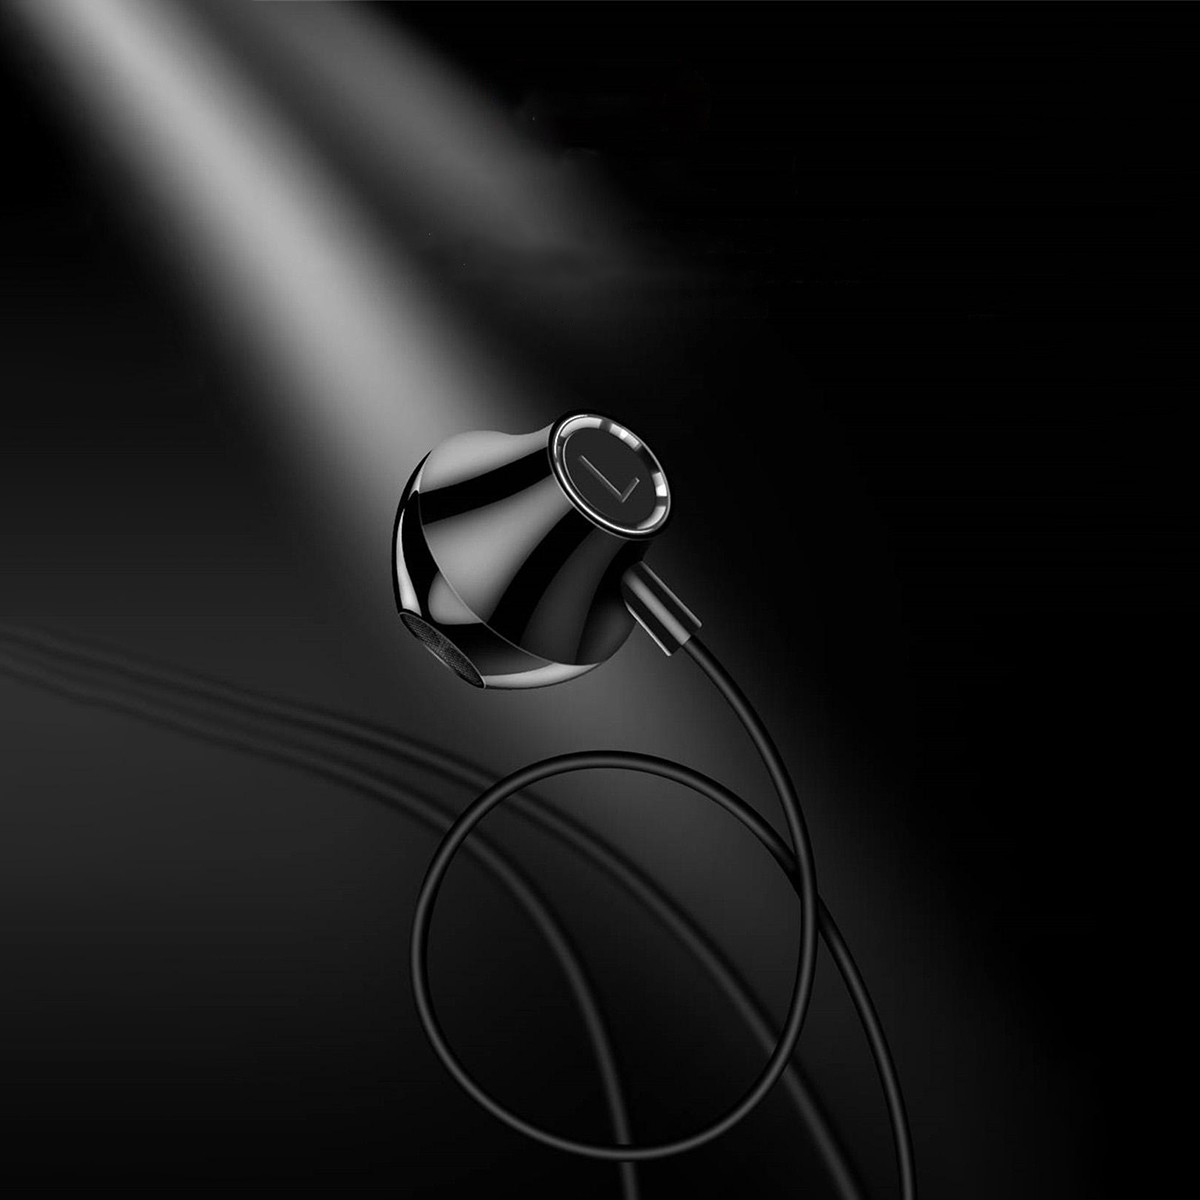 ワイヤレスイヤホン ブルートゥース イヤホン Bluetooth 両耳 スポーツ ワイヤレス Iphone Android 対応 マイク 防水 高音質 軽量 無線 Sporearphone1 Arinternationalshop 通販 Yahoo ショッピング